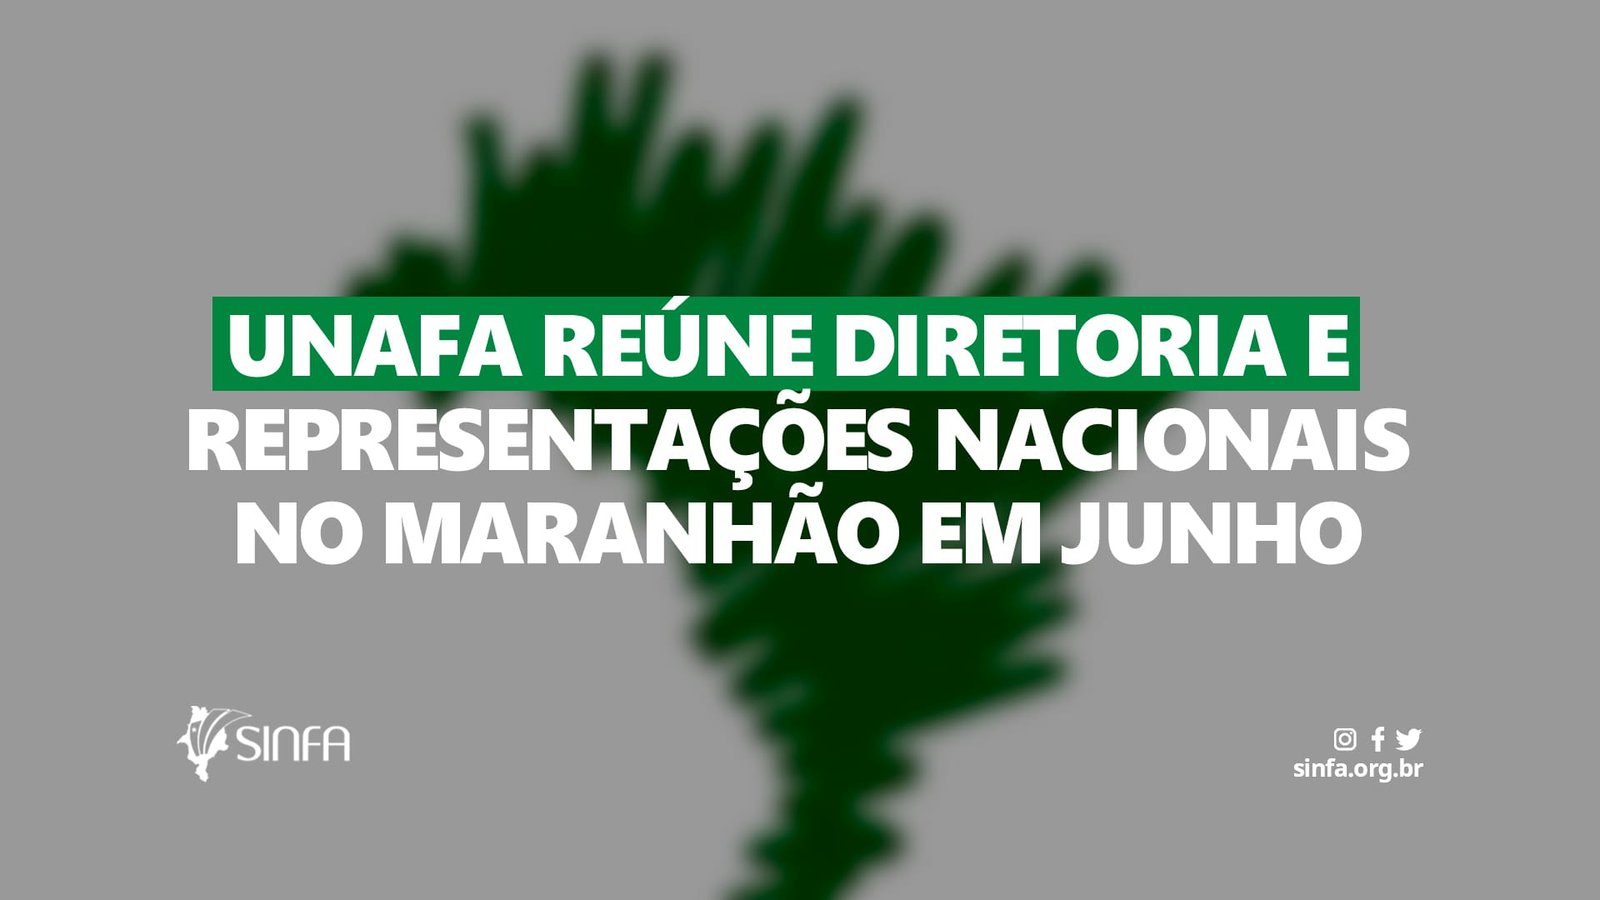 UNAFA reúne diretoria e representações nacionais no Maranhão em junho